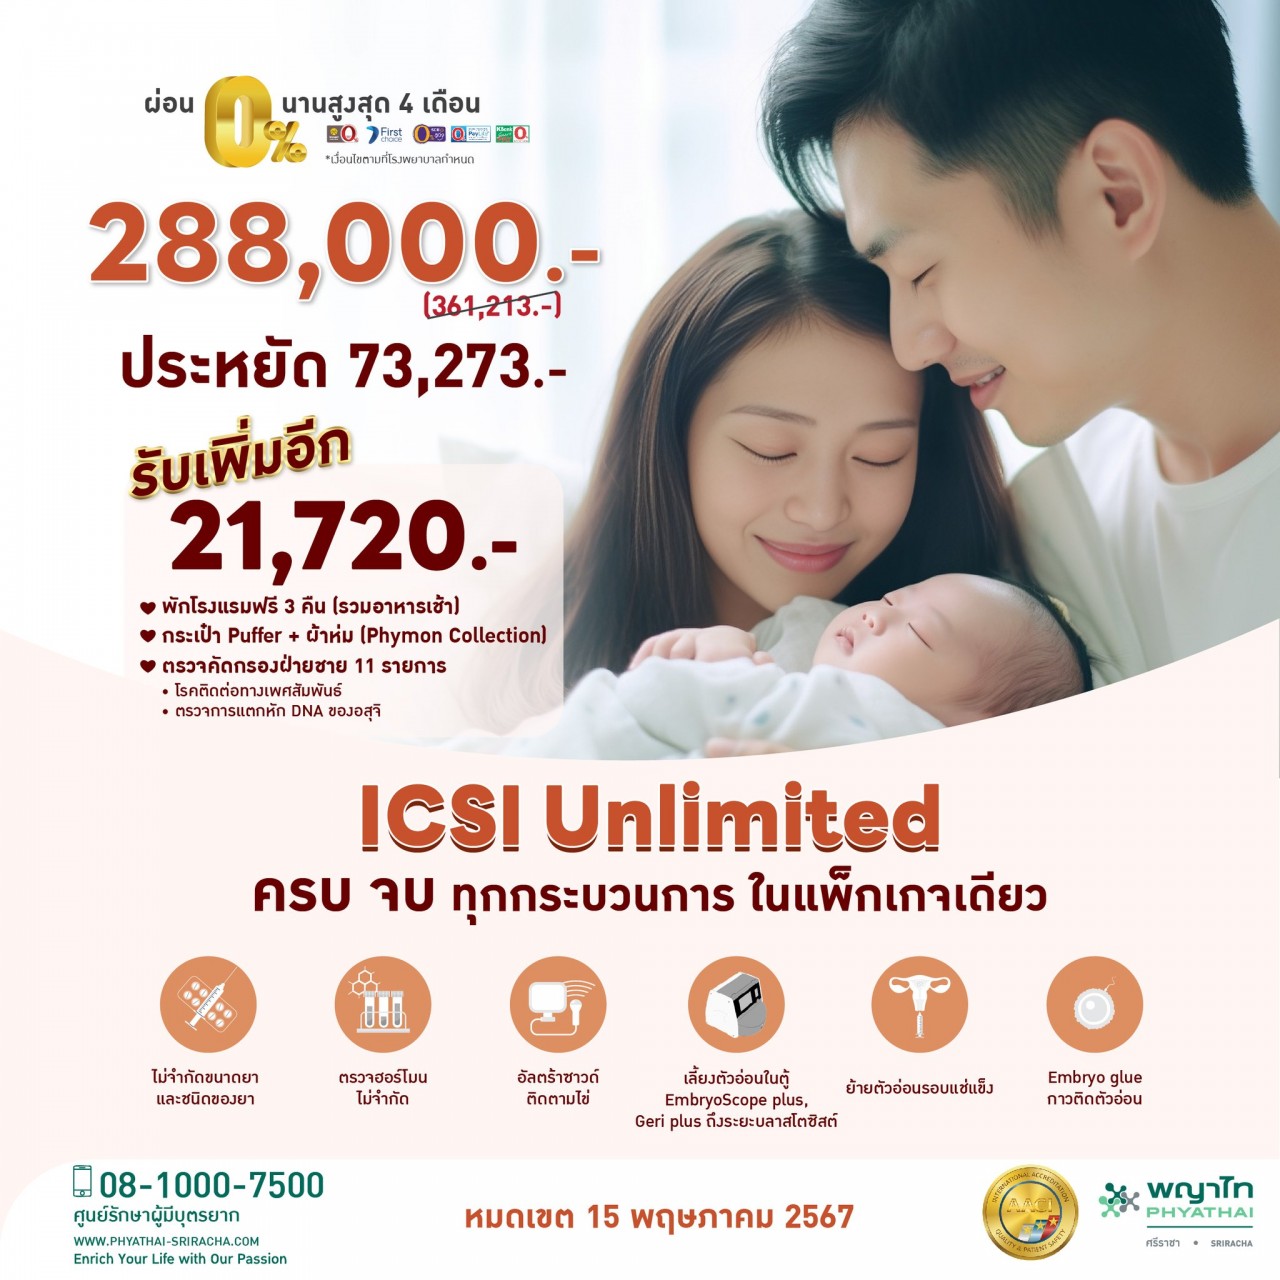 ICSI Unlimited  ครบจบทุกกระบวนการในแพ็กเกจเดียว